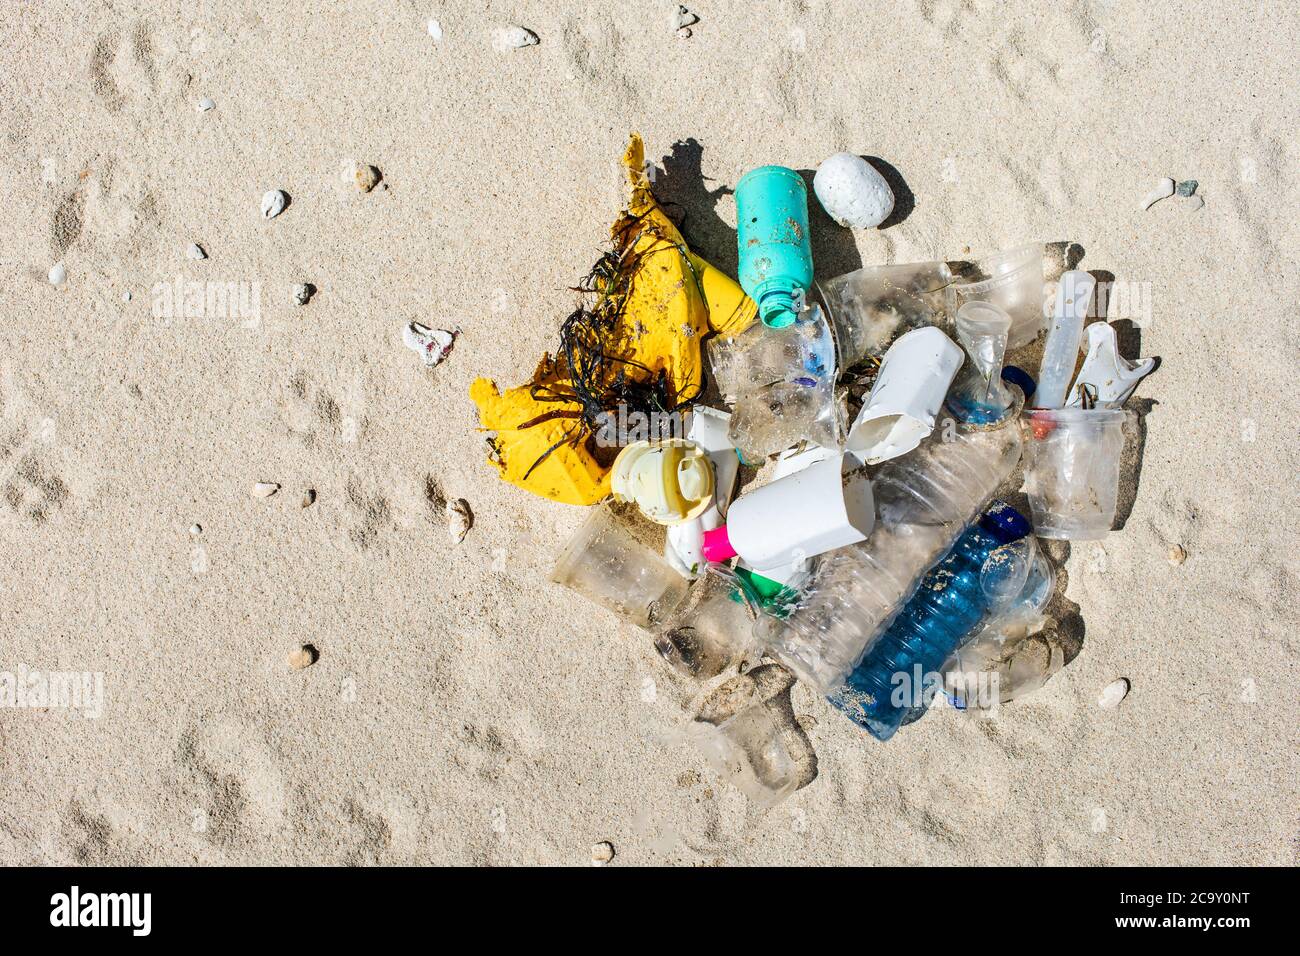 Haufen verschiedener Plastikmüll am Strand. Umweltverschmutzungsproblem. Rette die Erde, hör auf mit Plastik. Stockfoto